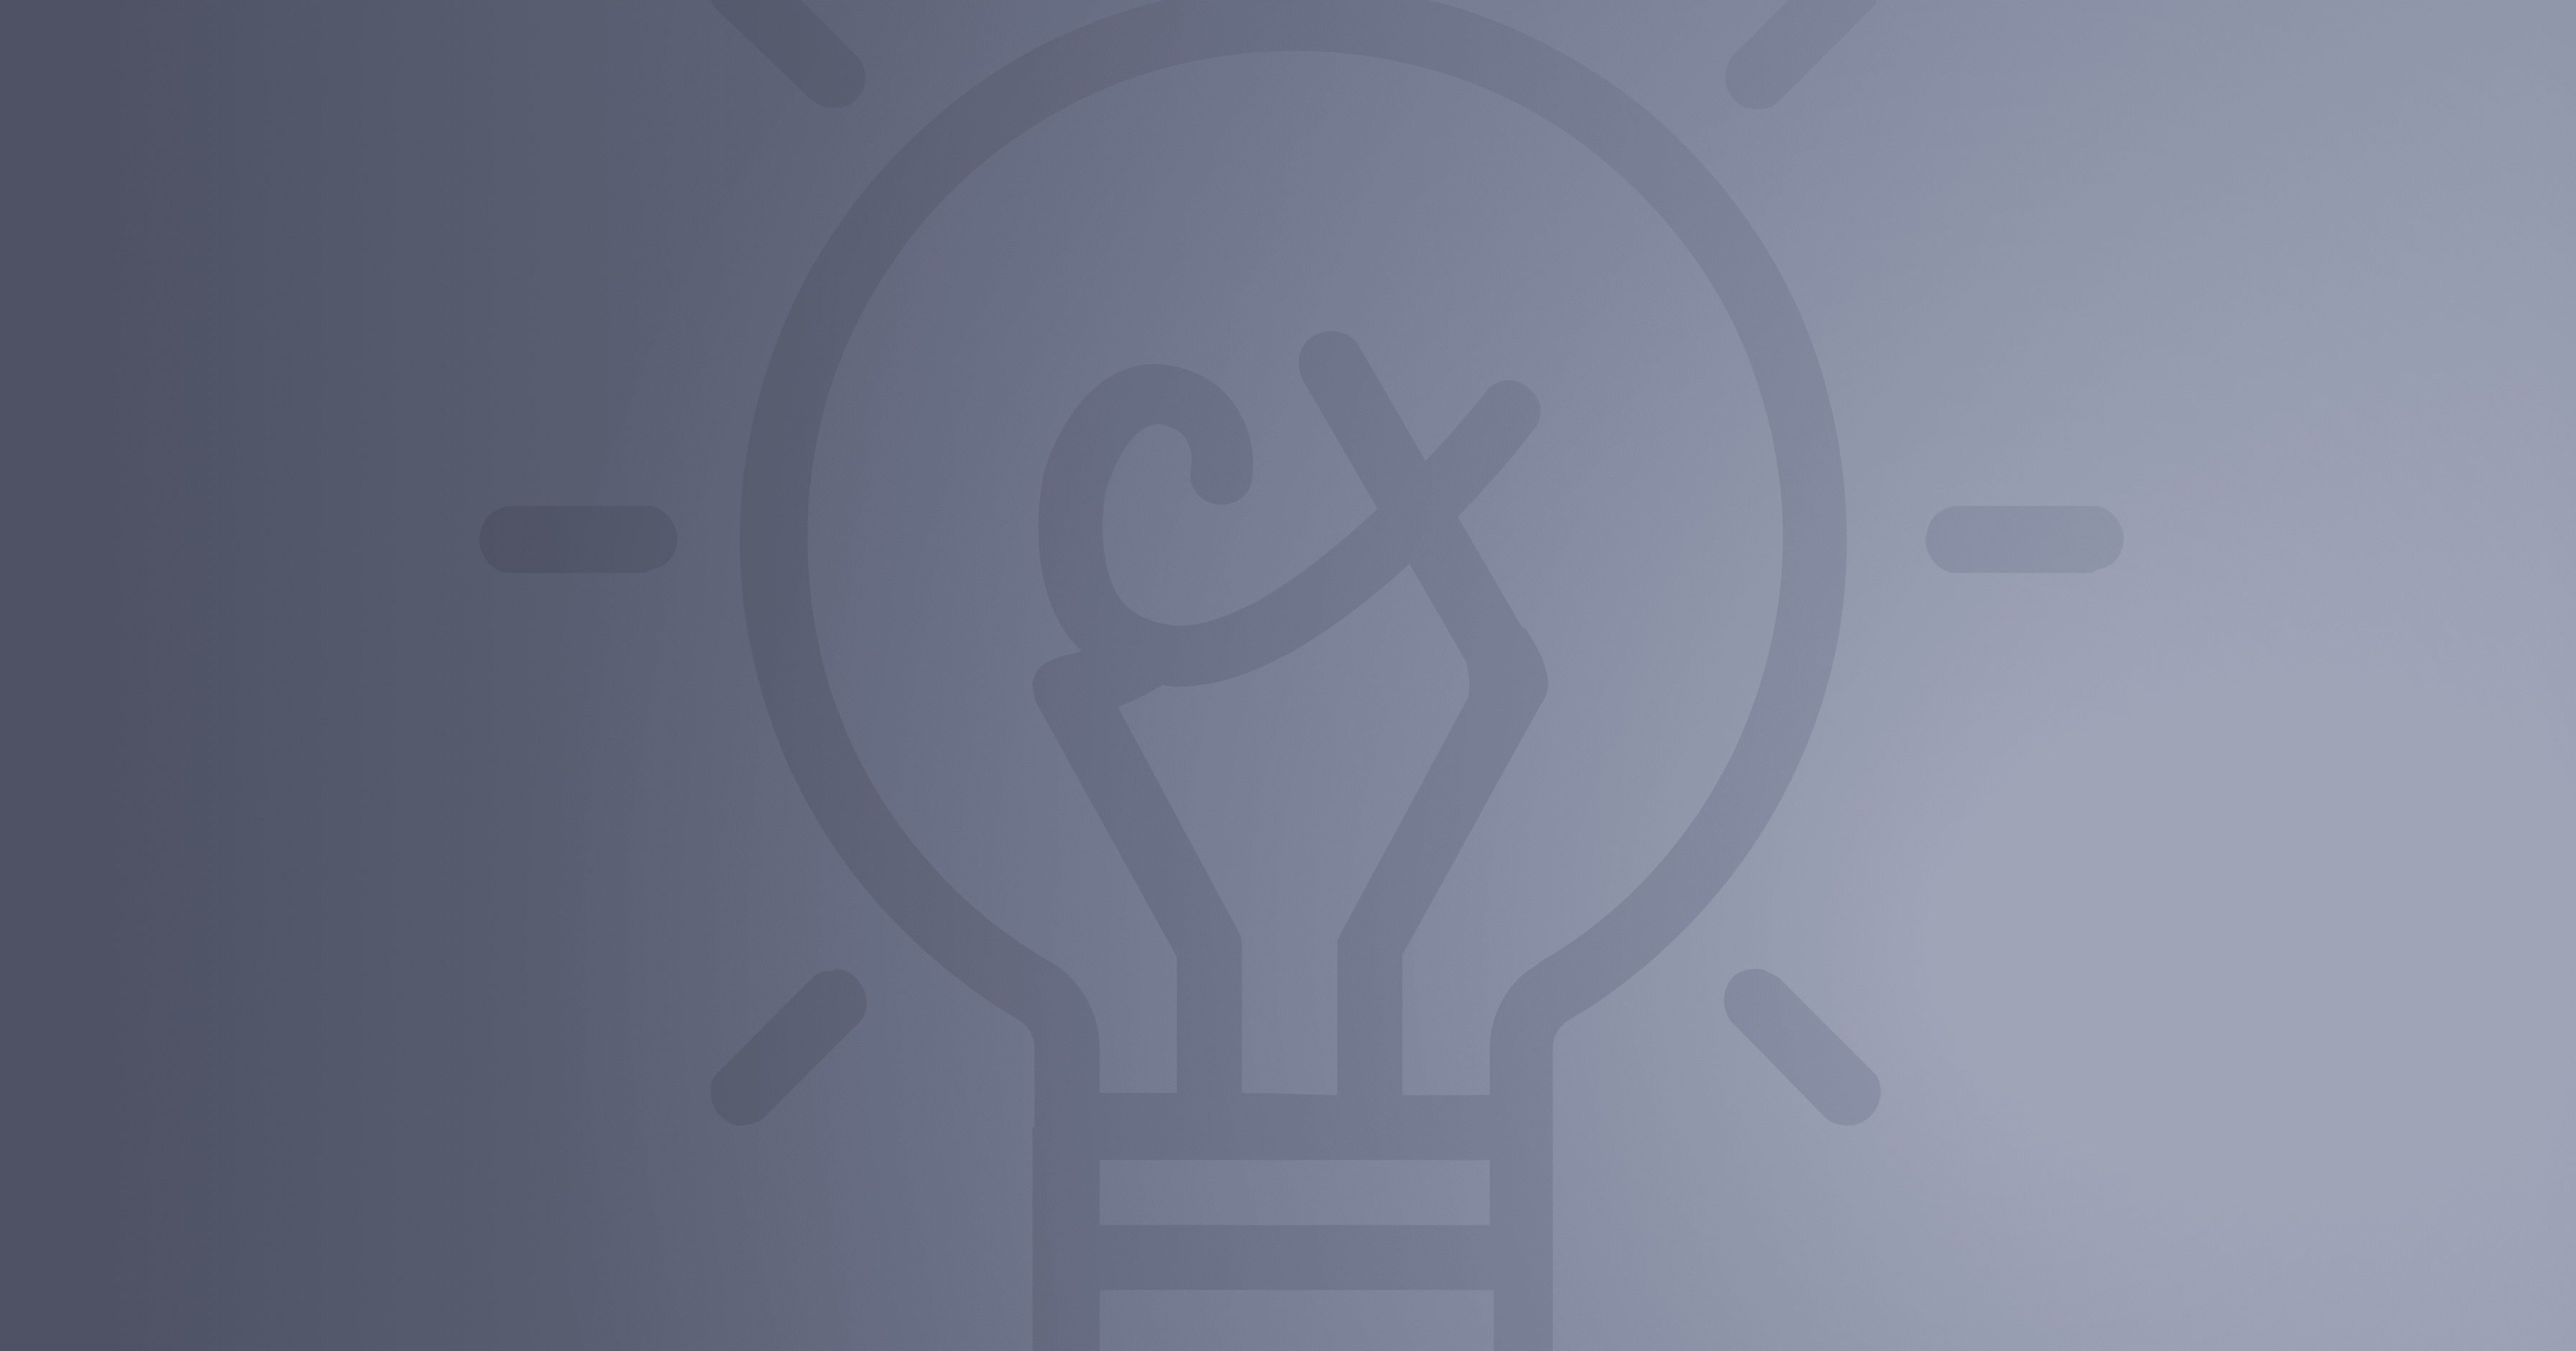 CX lightbulb background image - Little CX Ideas